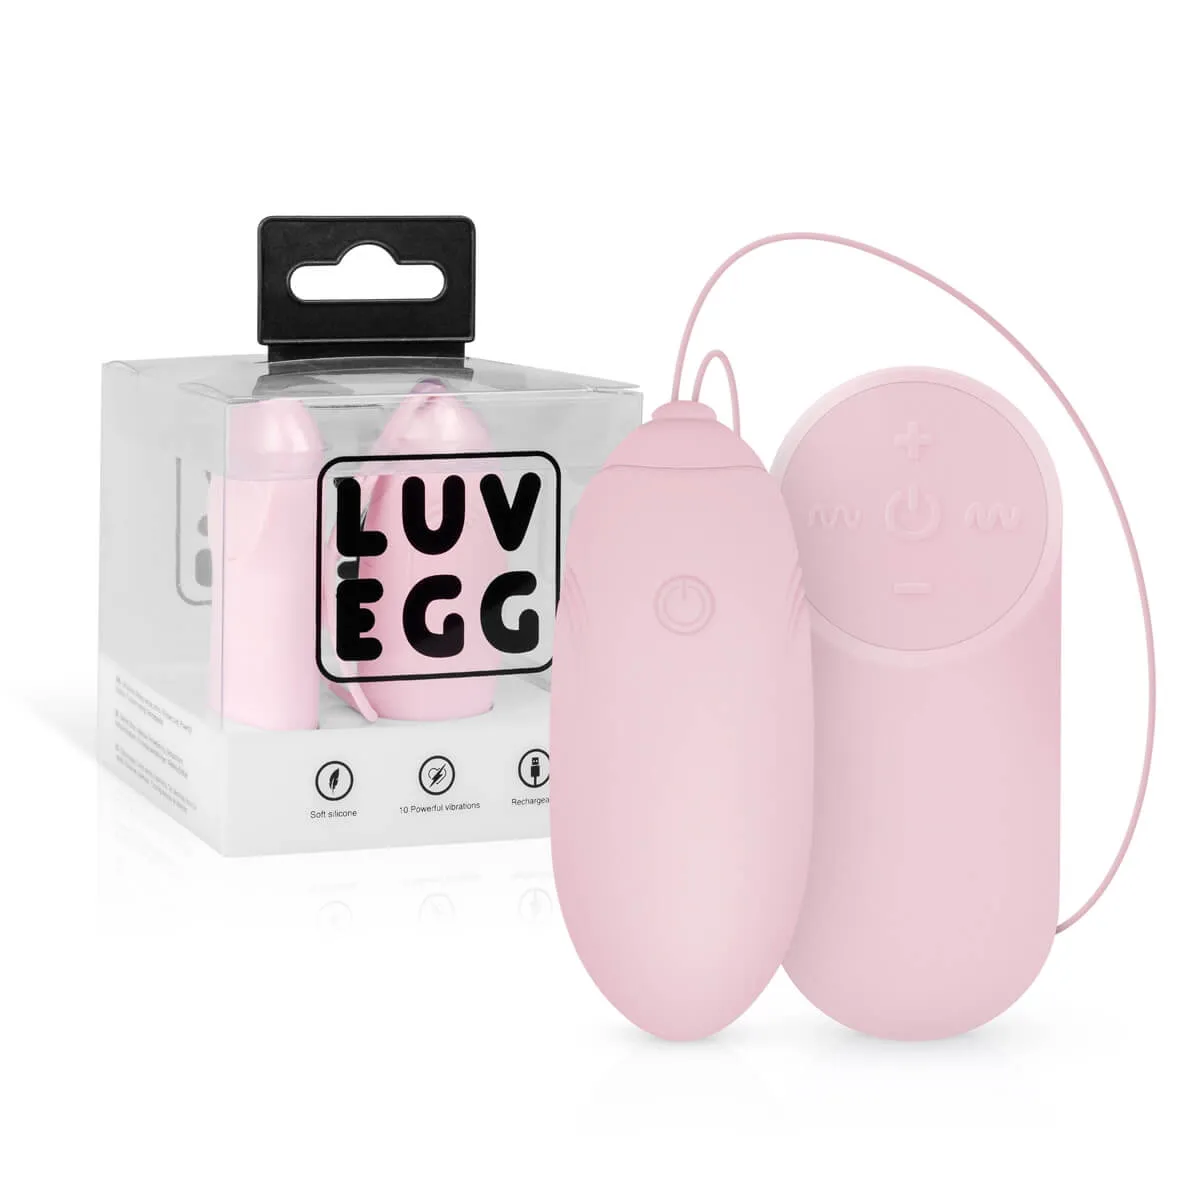 LUV EGG nabíjecí vibrační vajíčko na dálkové ovládání